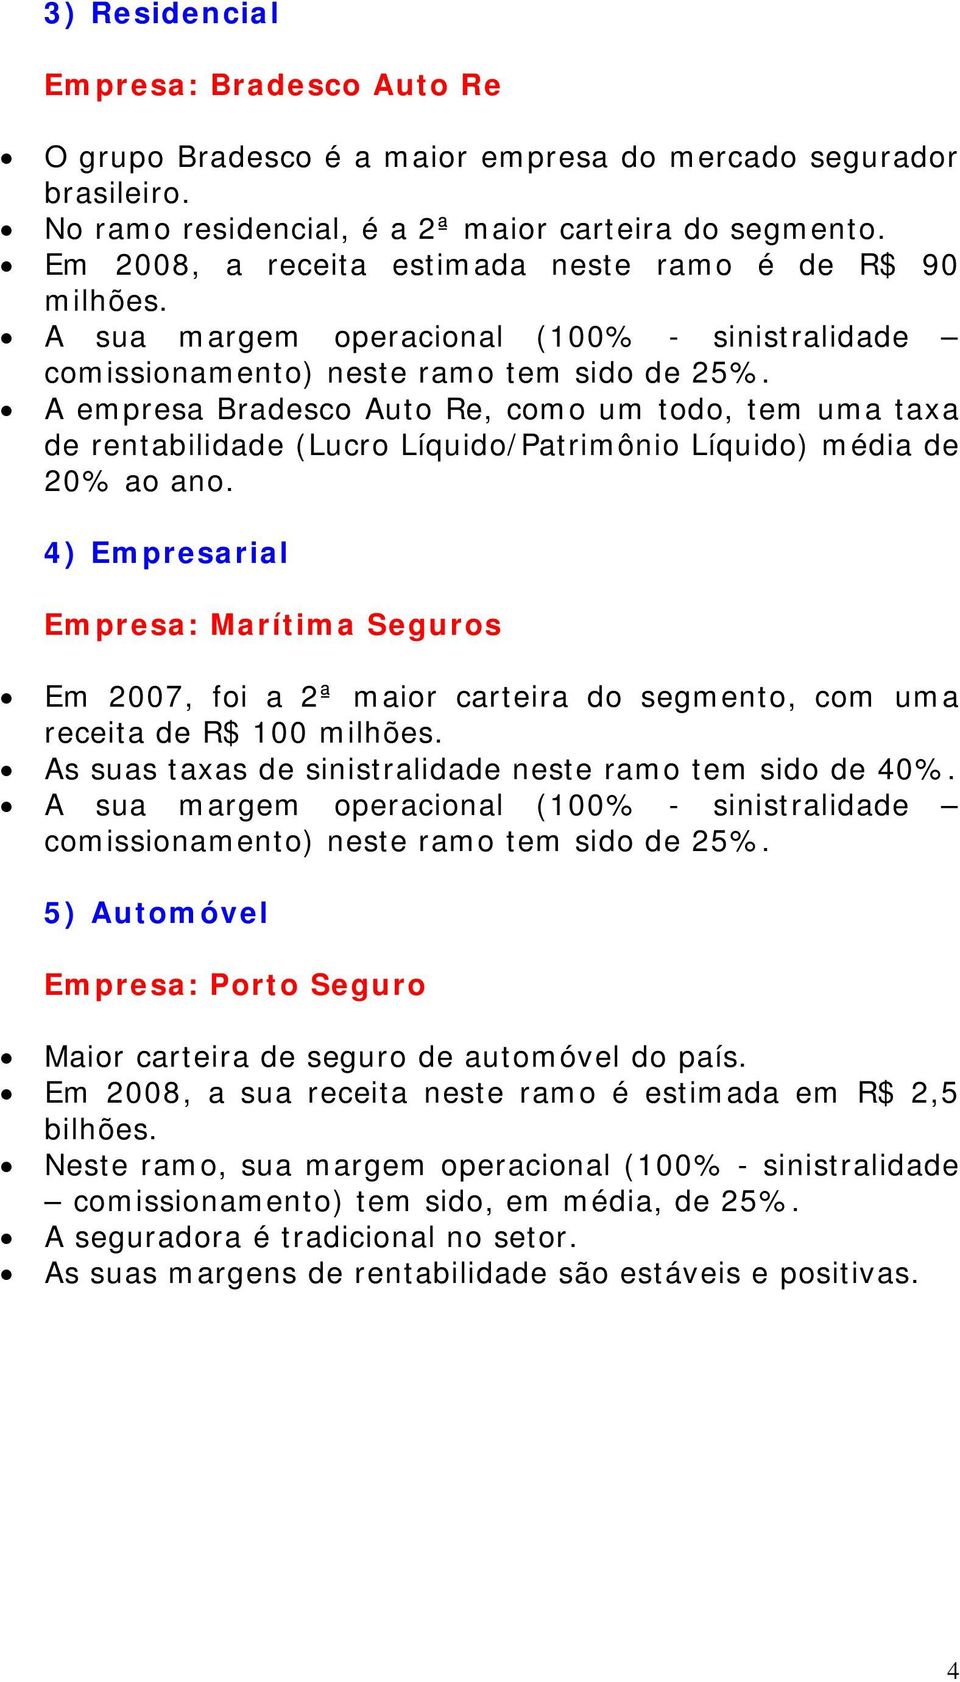 A empresa Bradesco Auto Re, como um todo, tem uma taxa de rentabilidade (Lucro Líquido/Patrimônio Líquido) média de 20% ao ano.